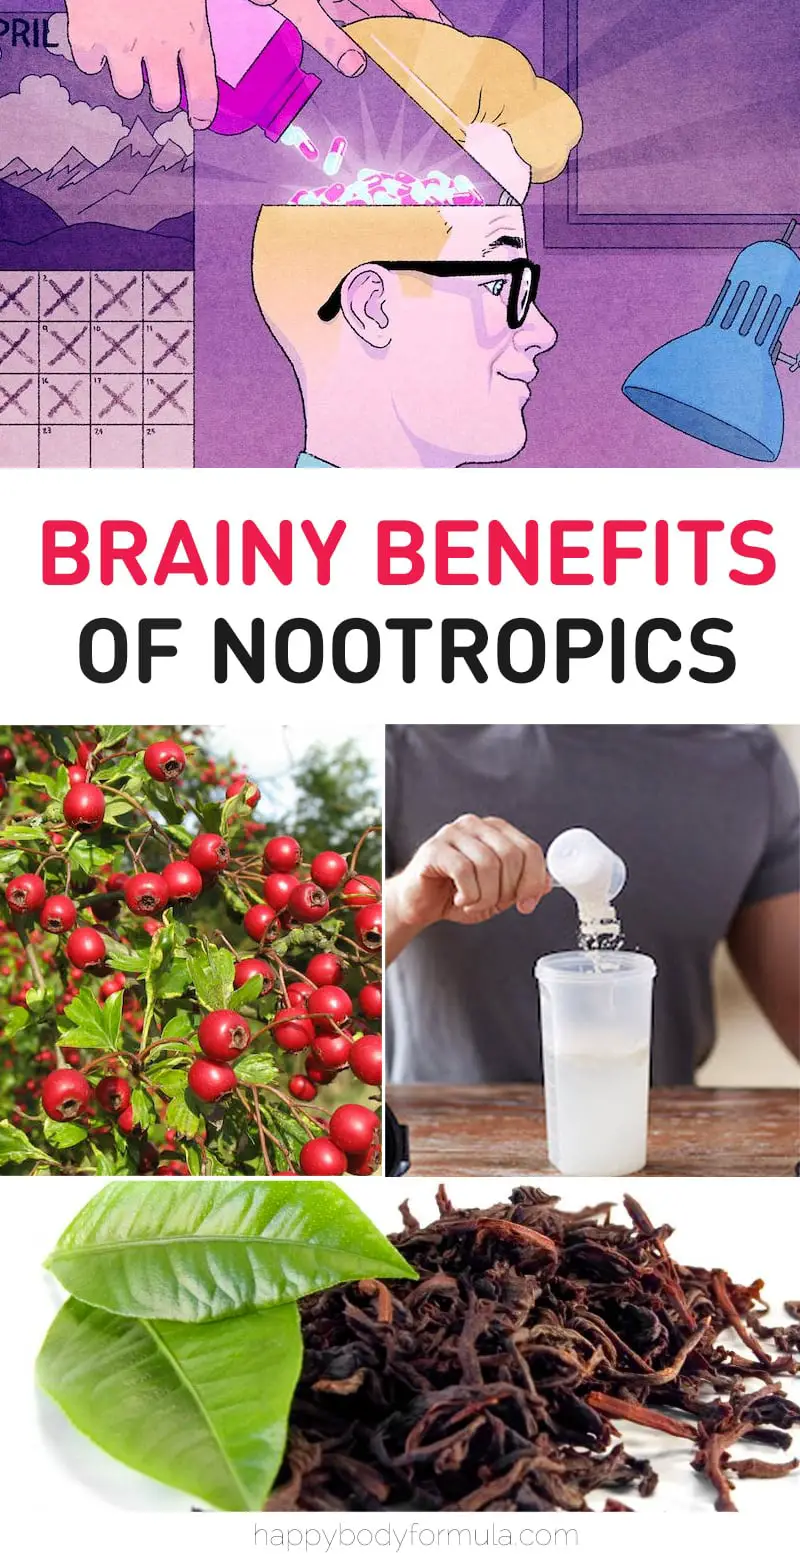 A Guide to Nootropics: Biohacking the Brain | Happybodyformula.com